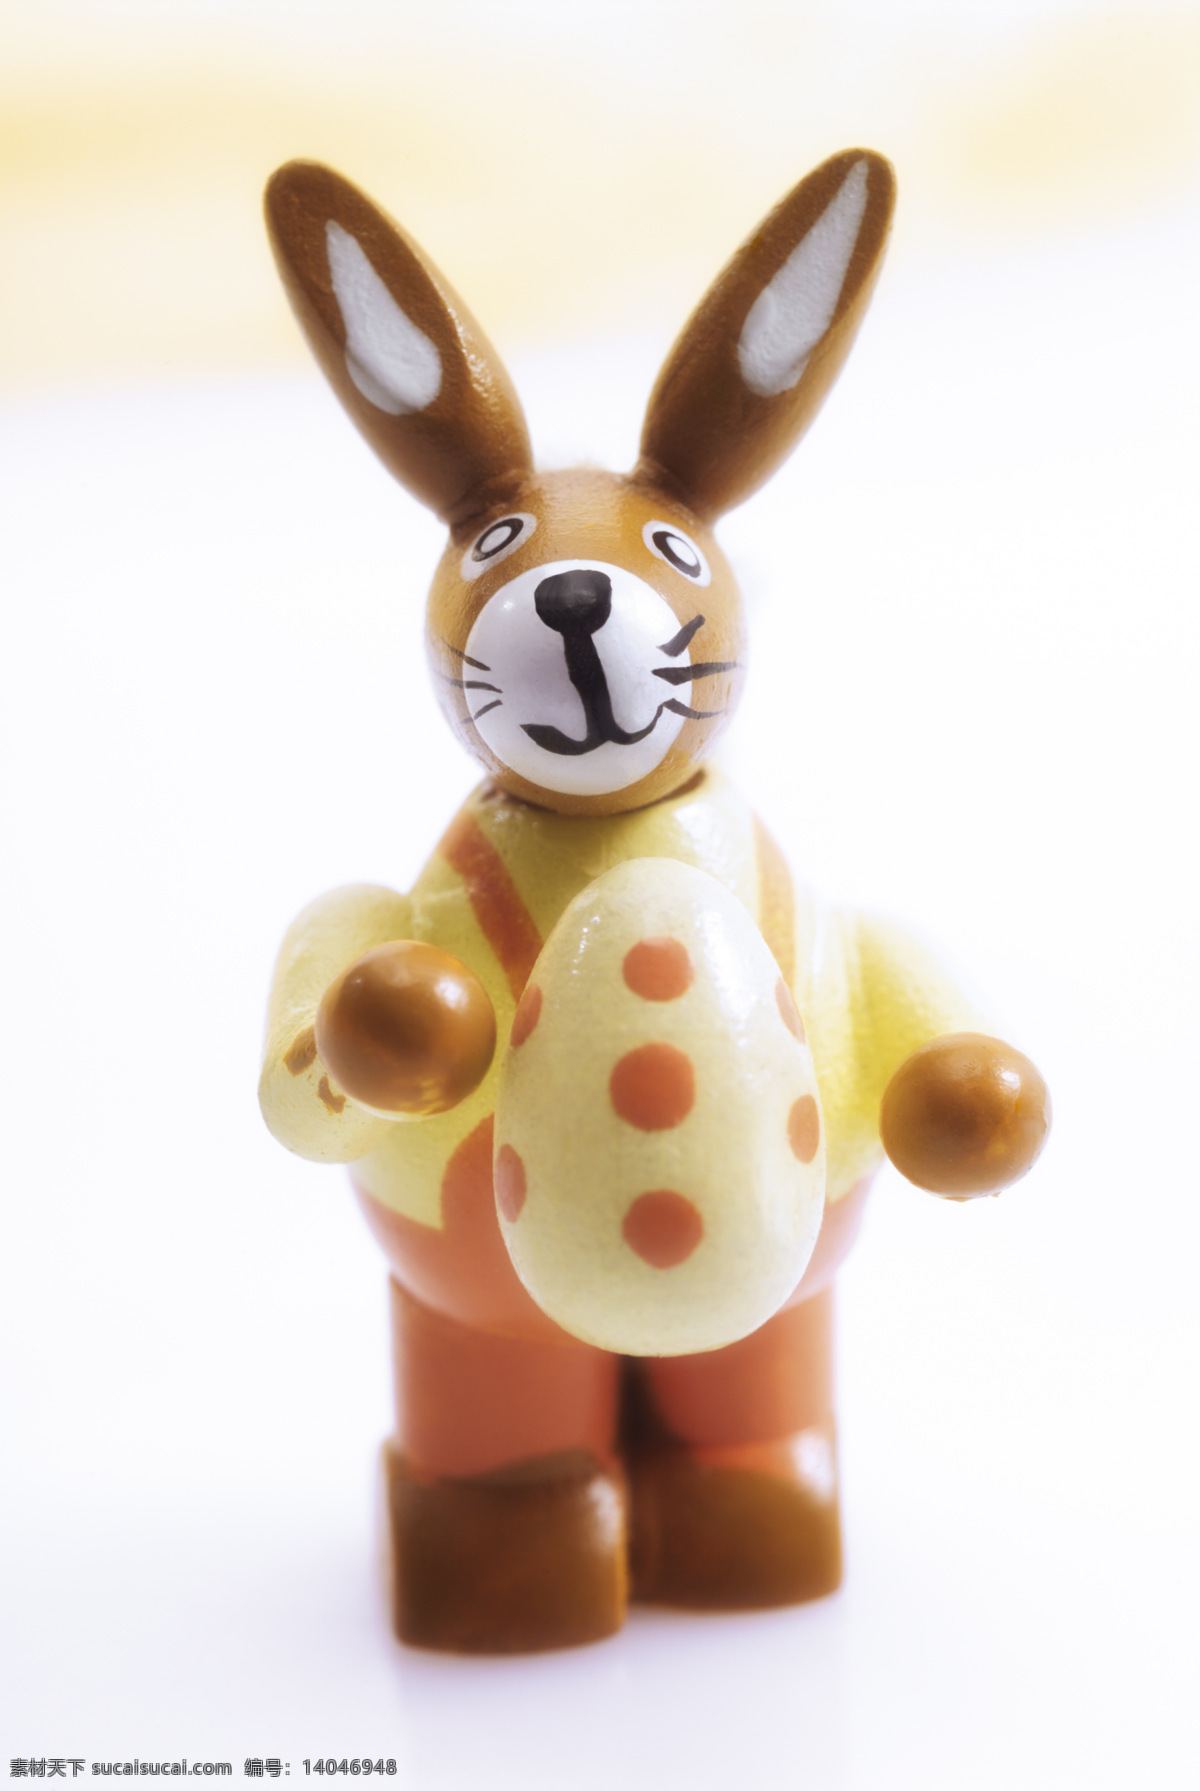 摆件 彩蛋 动物 可爱 生活百科 兔子 玩具 兔 小动物 娱乐休闲 玩具兔 psd源文件